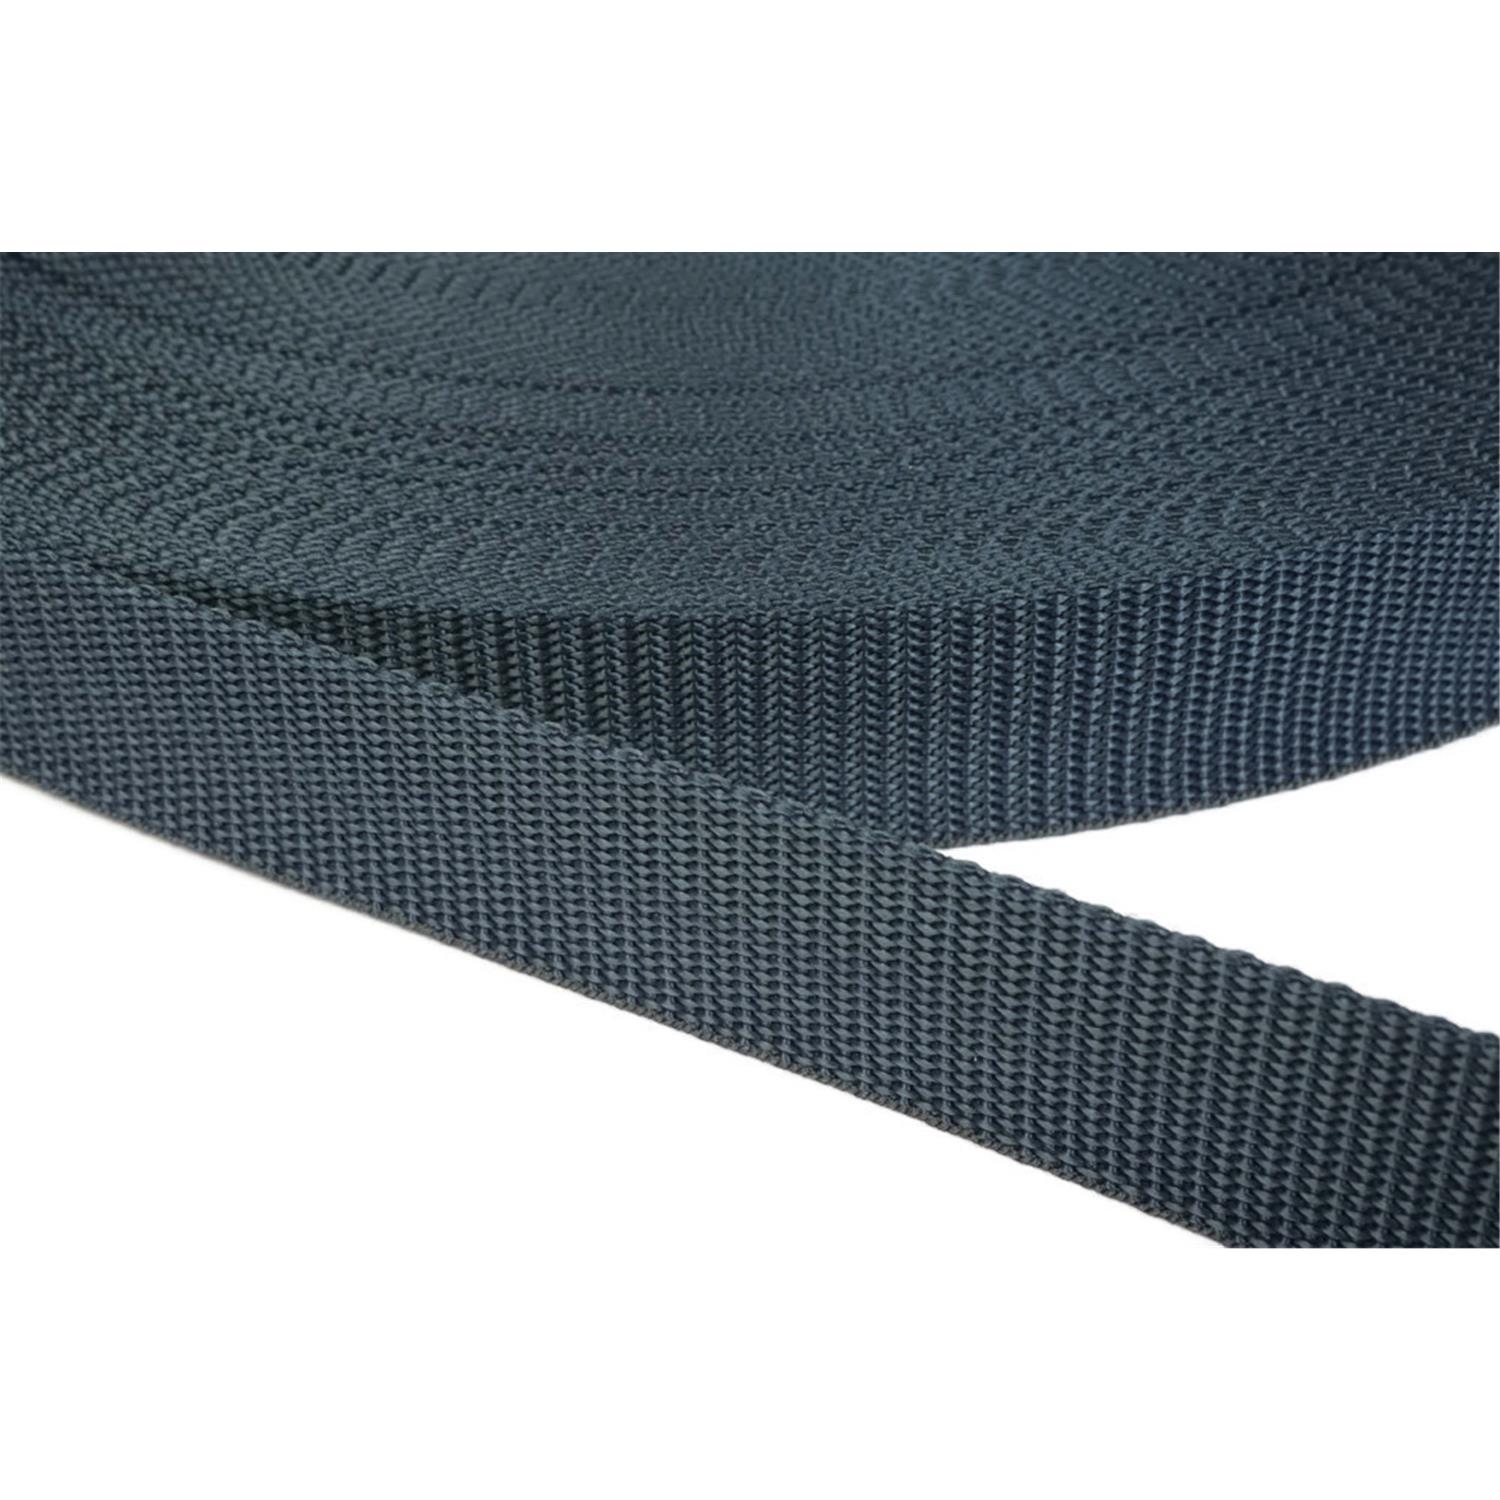 Gurtband 20mm breit aus Polypropylen in 41 Farben 40 - dunkelgrau/blau 50 Meter